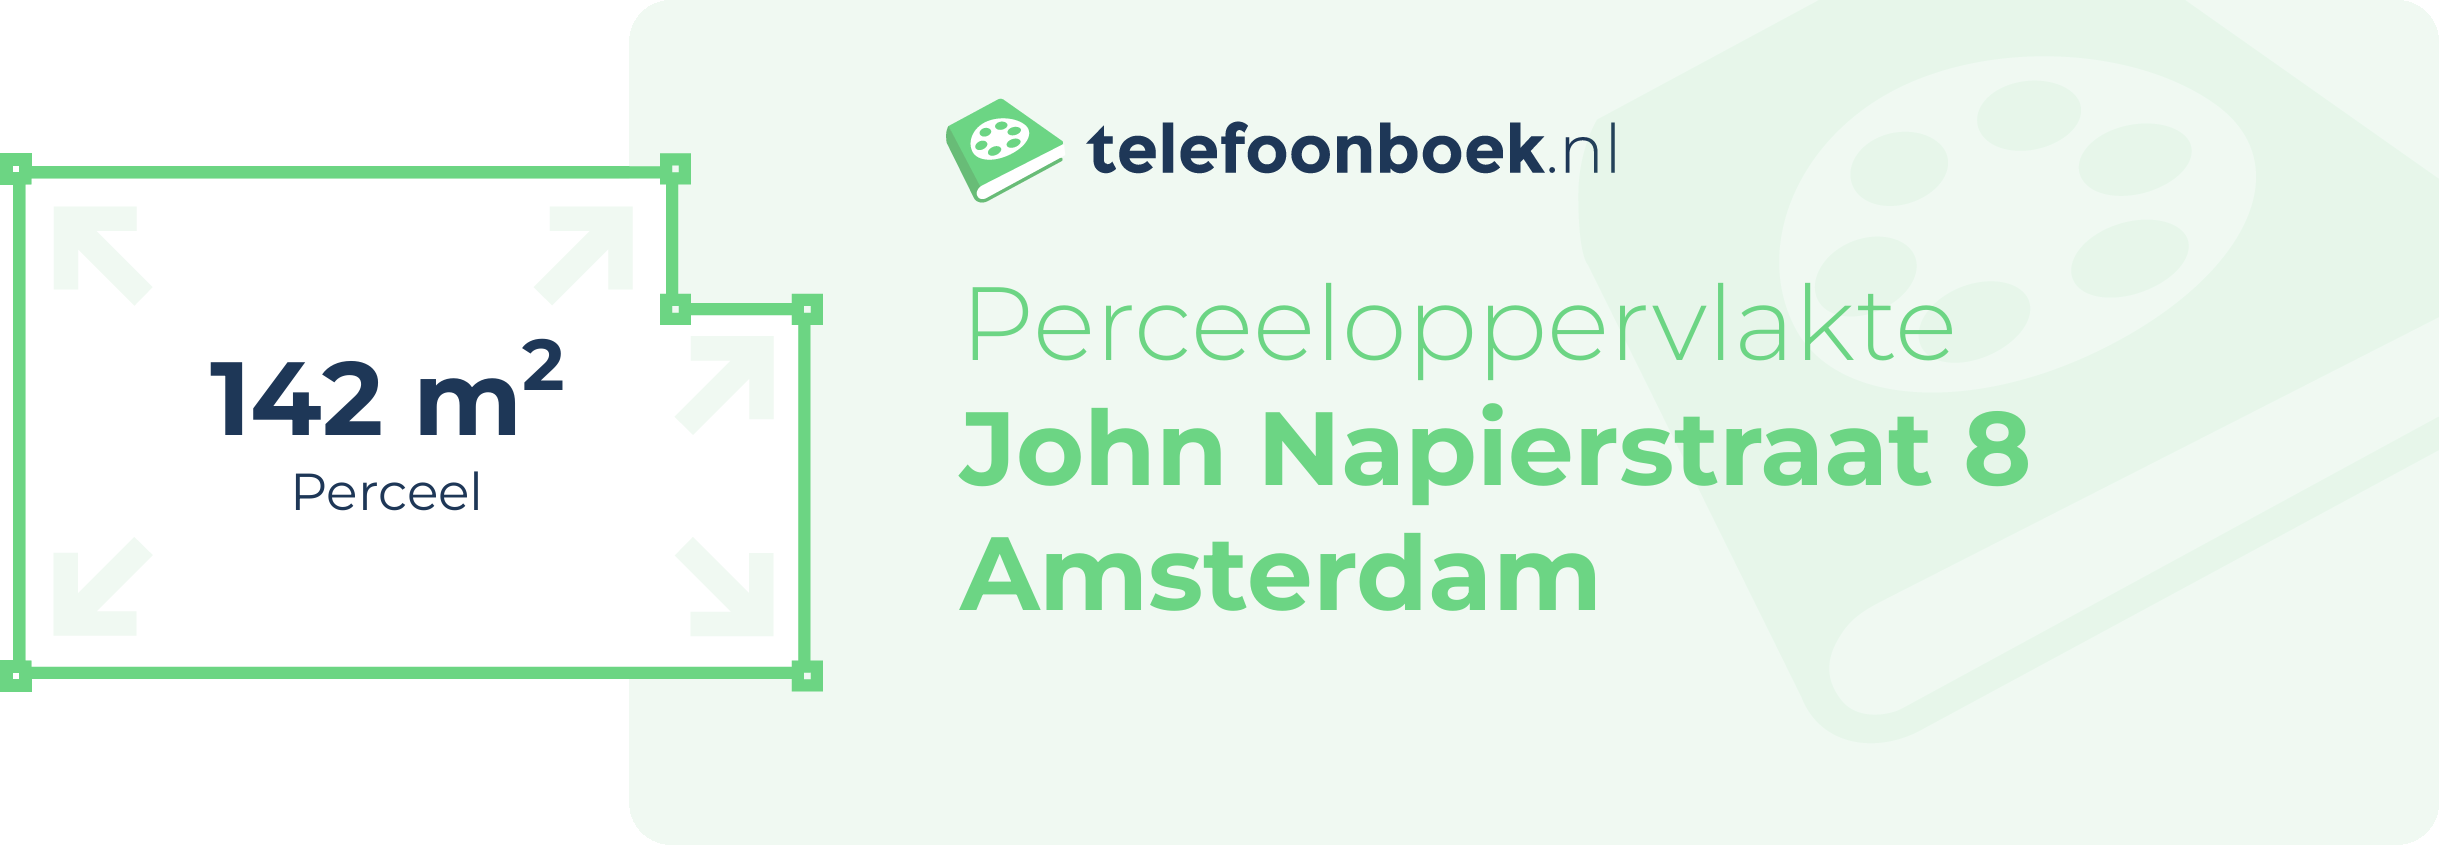 Perceeloppervlakte John Napierstraat 8 Amsterdam